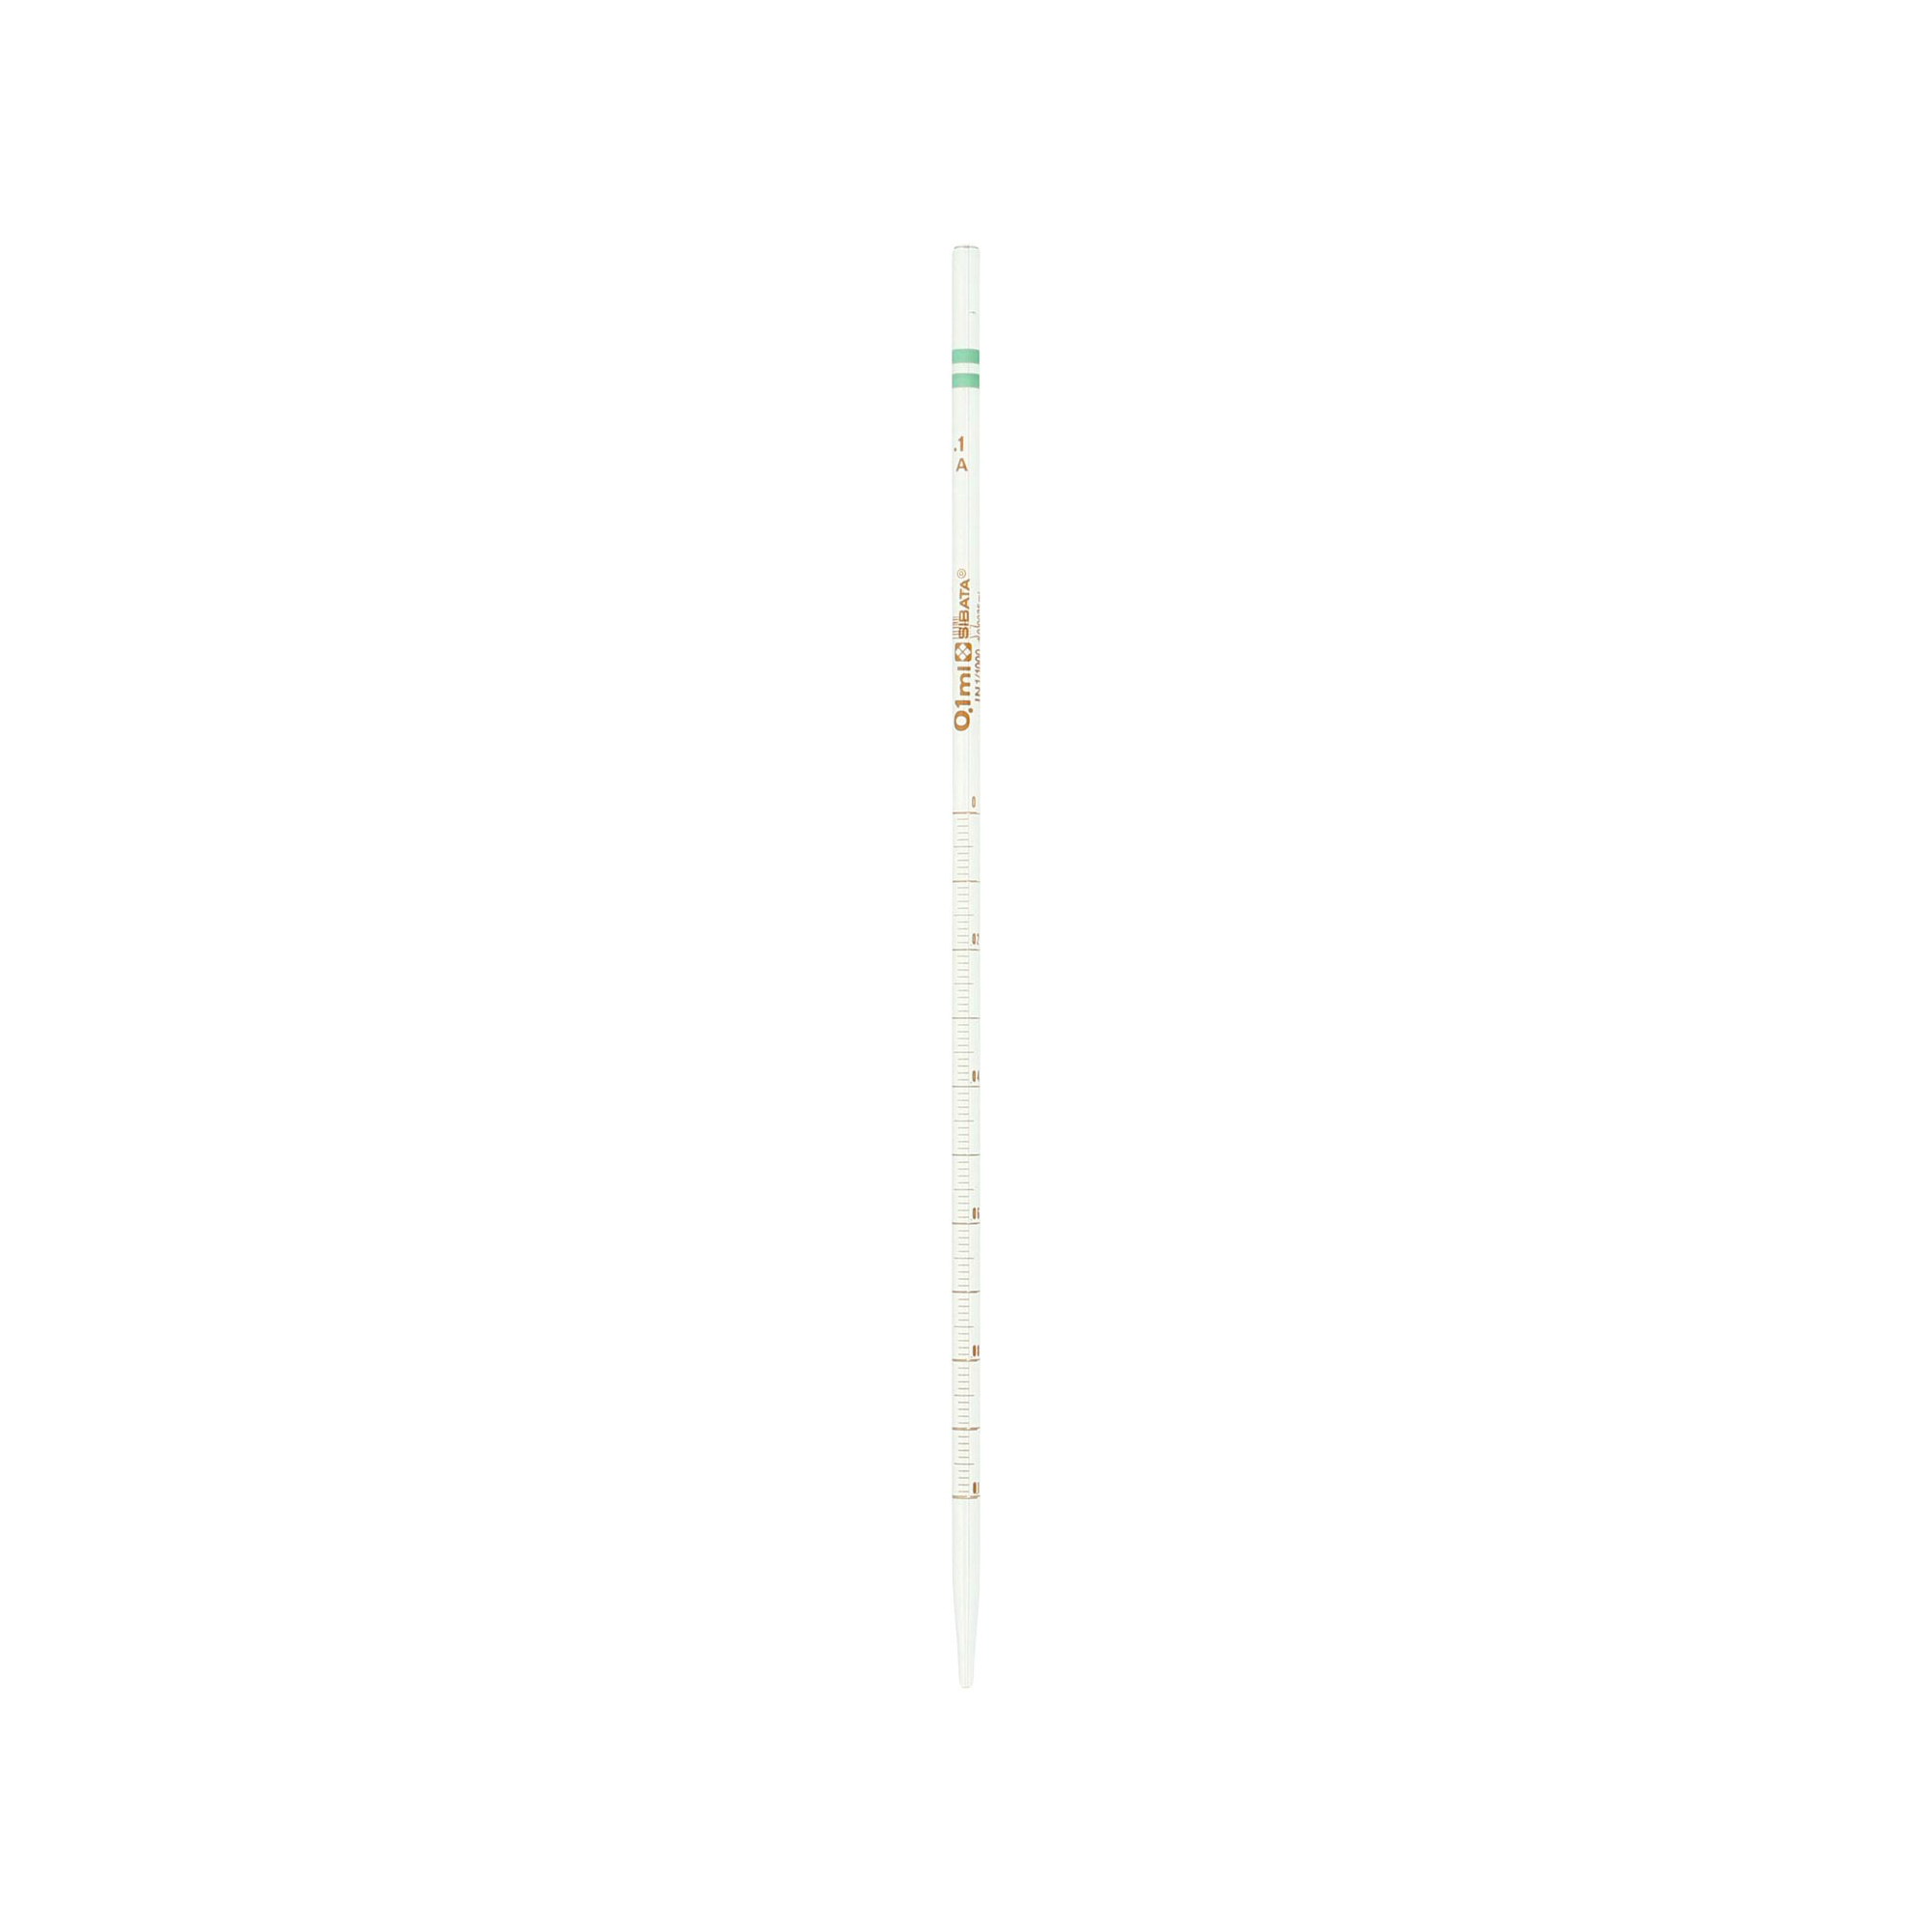 メスピペット 中間目盛 カラーコード付 スーパーグレード 0.1mL(10本)